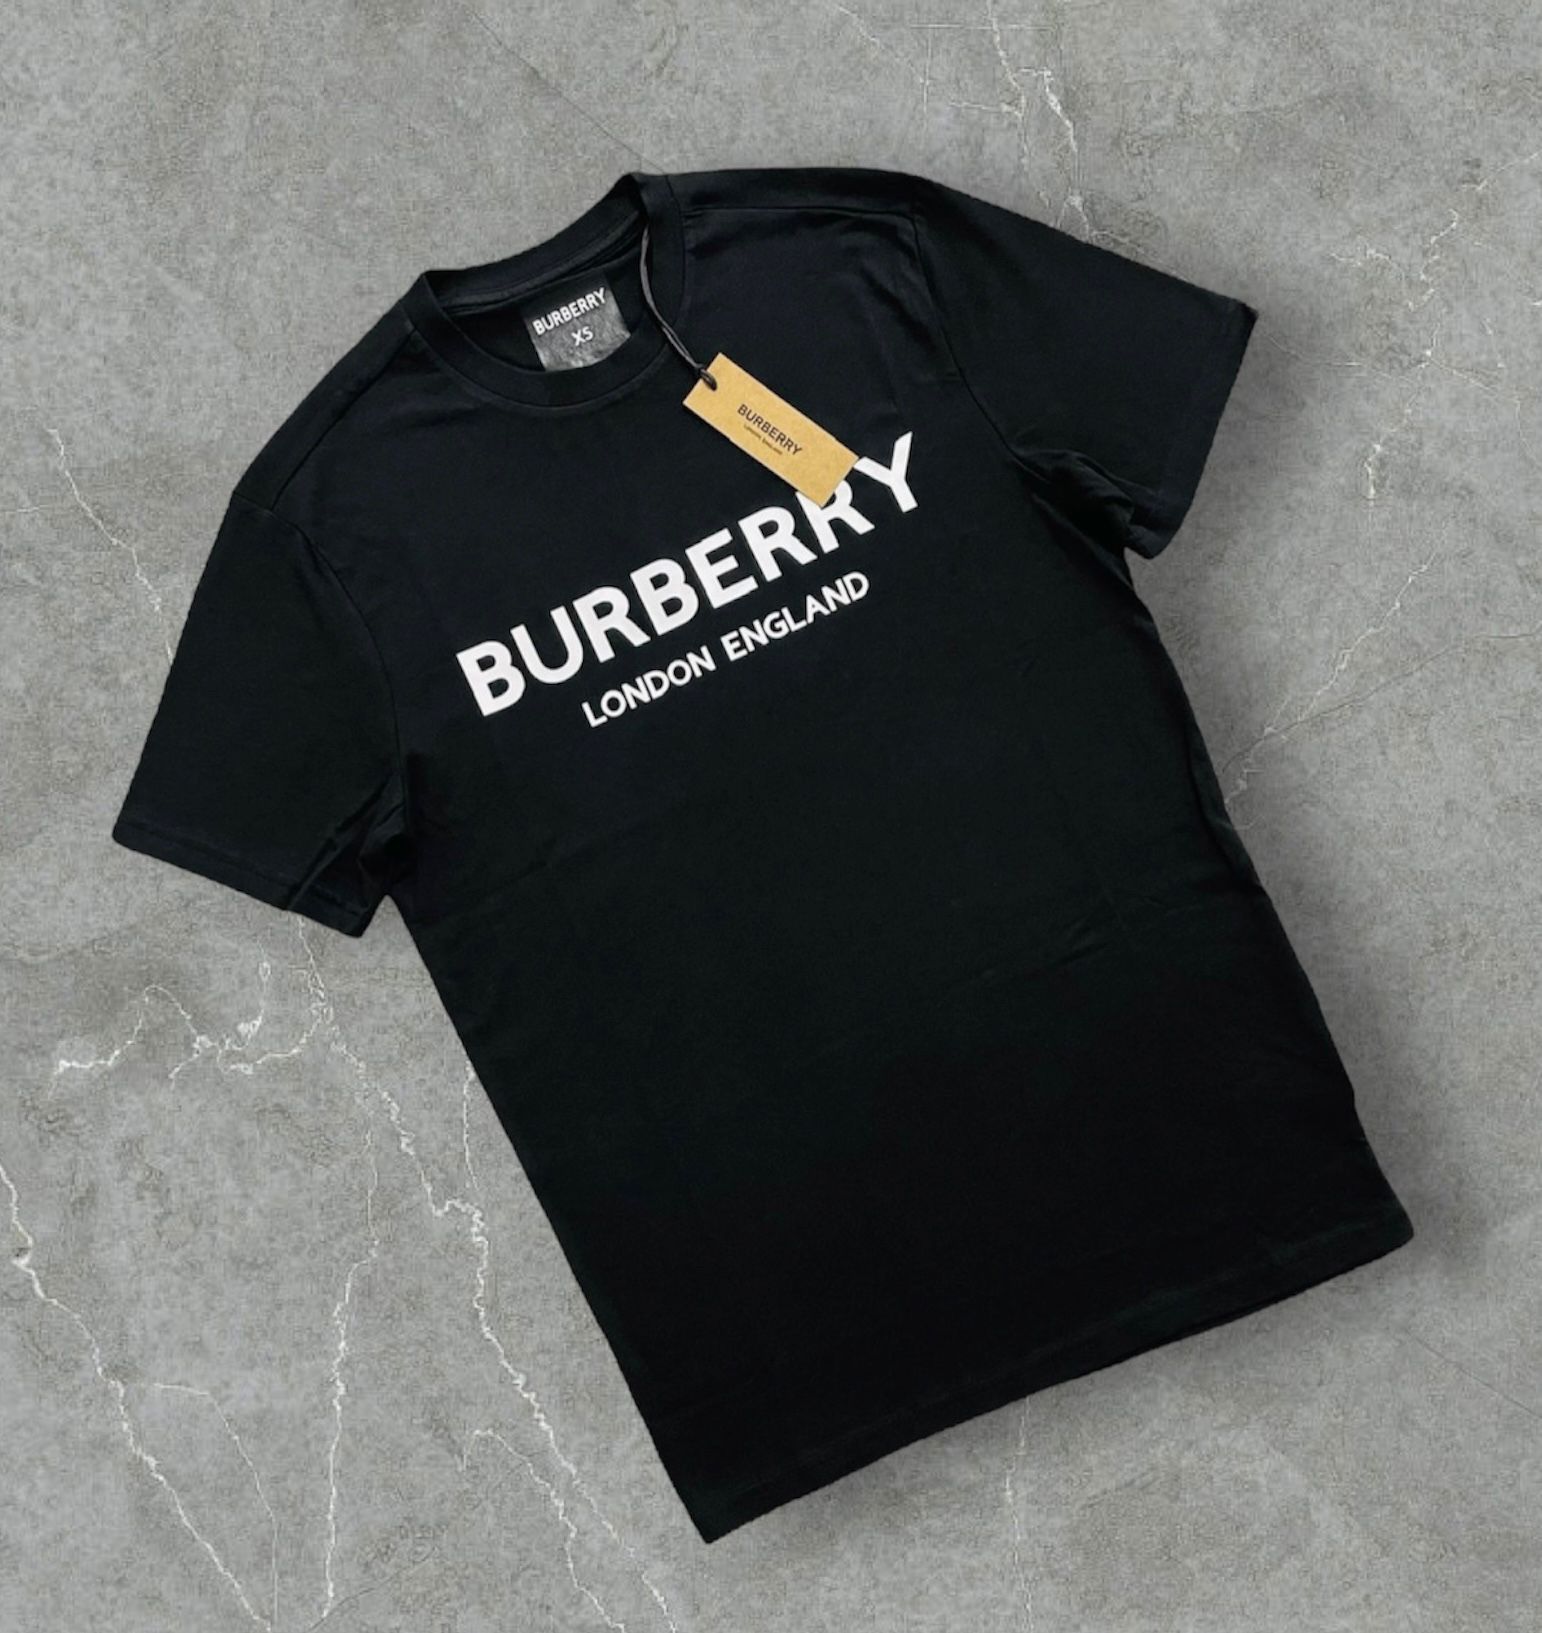 Burberry Tshirt Black And White 